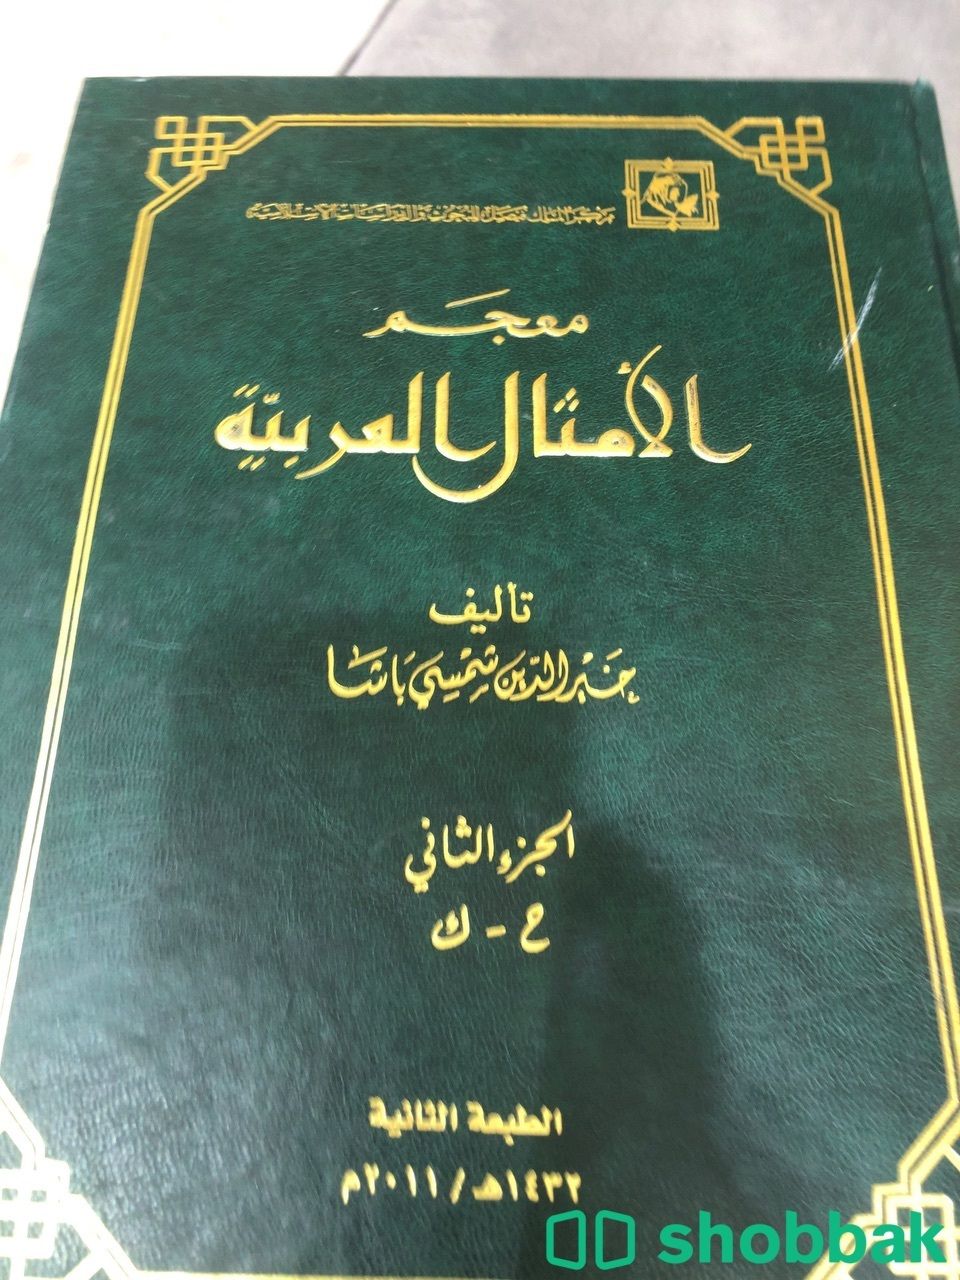 ‏ كتاب معجم الامثال العربية الجزاء الاول والثاني شباك السعودية